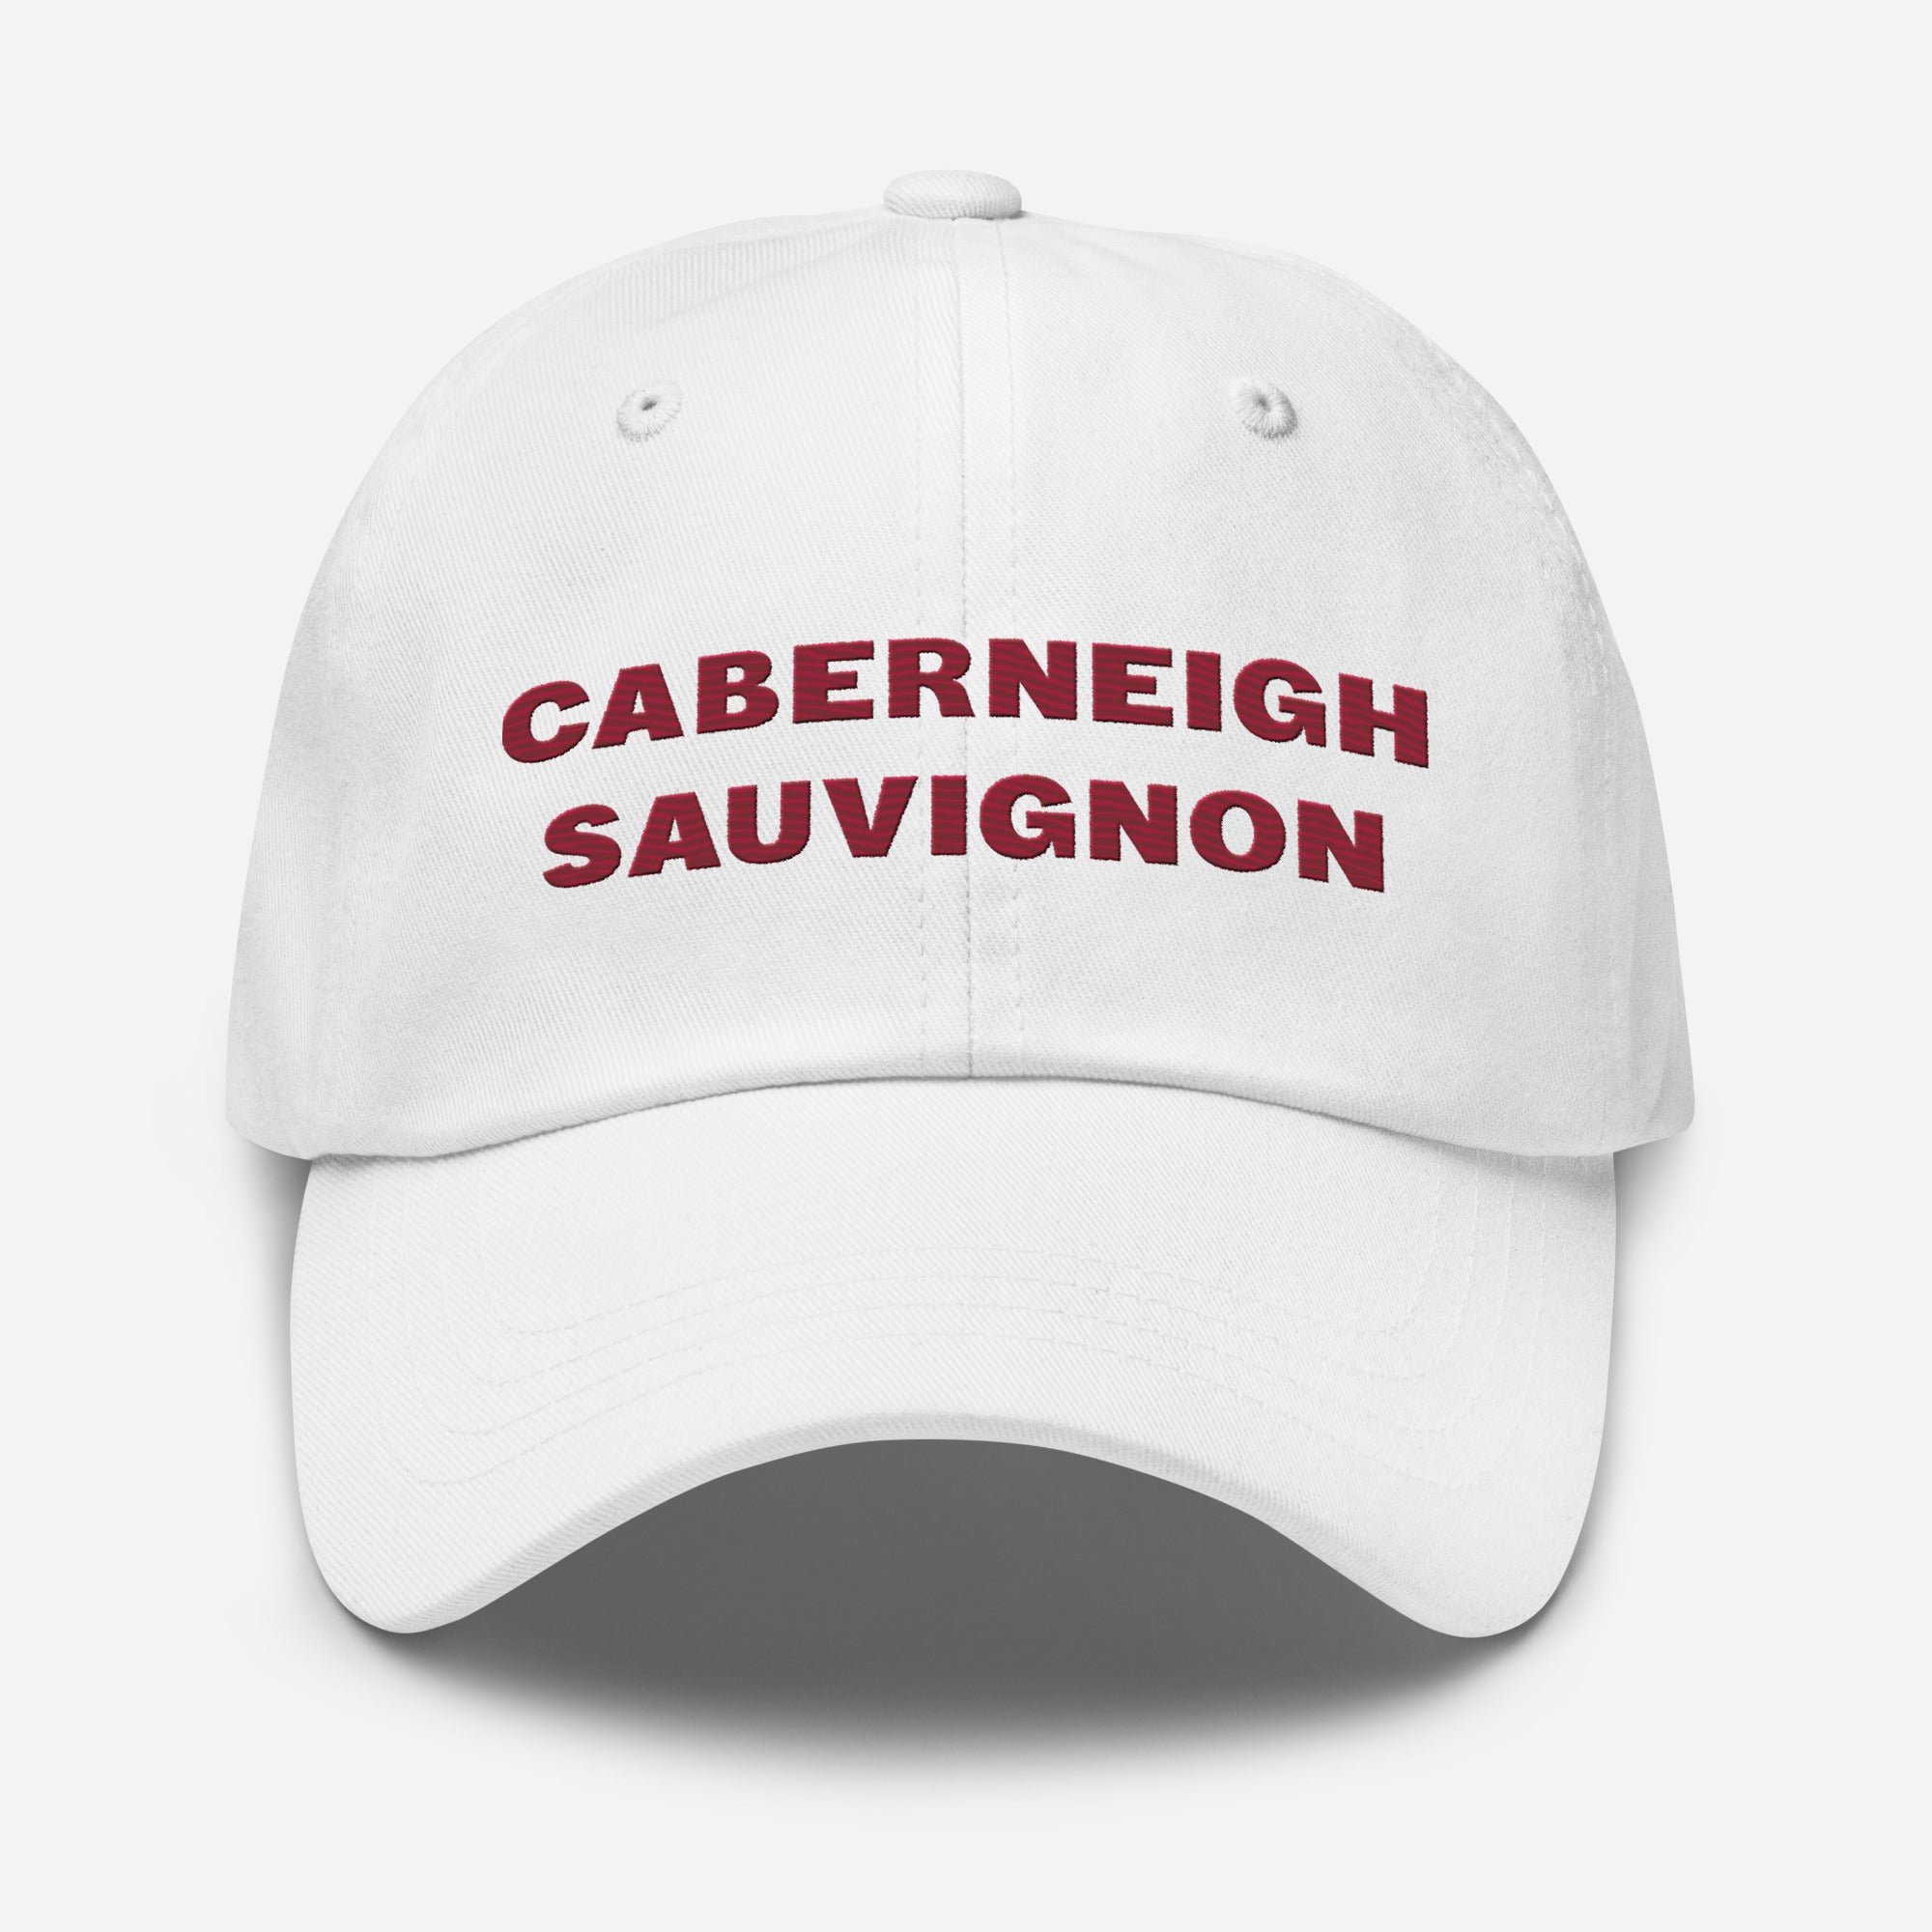 Caberneigh Sauvignon Dad Hat